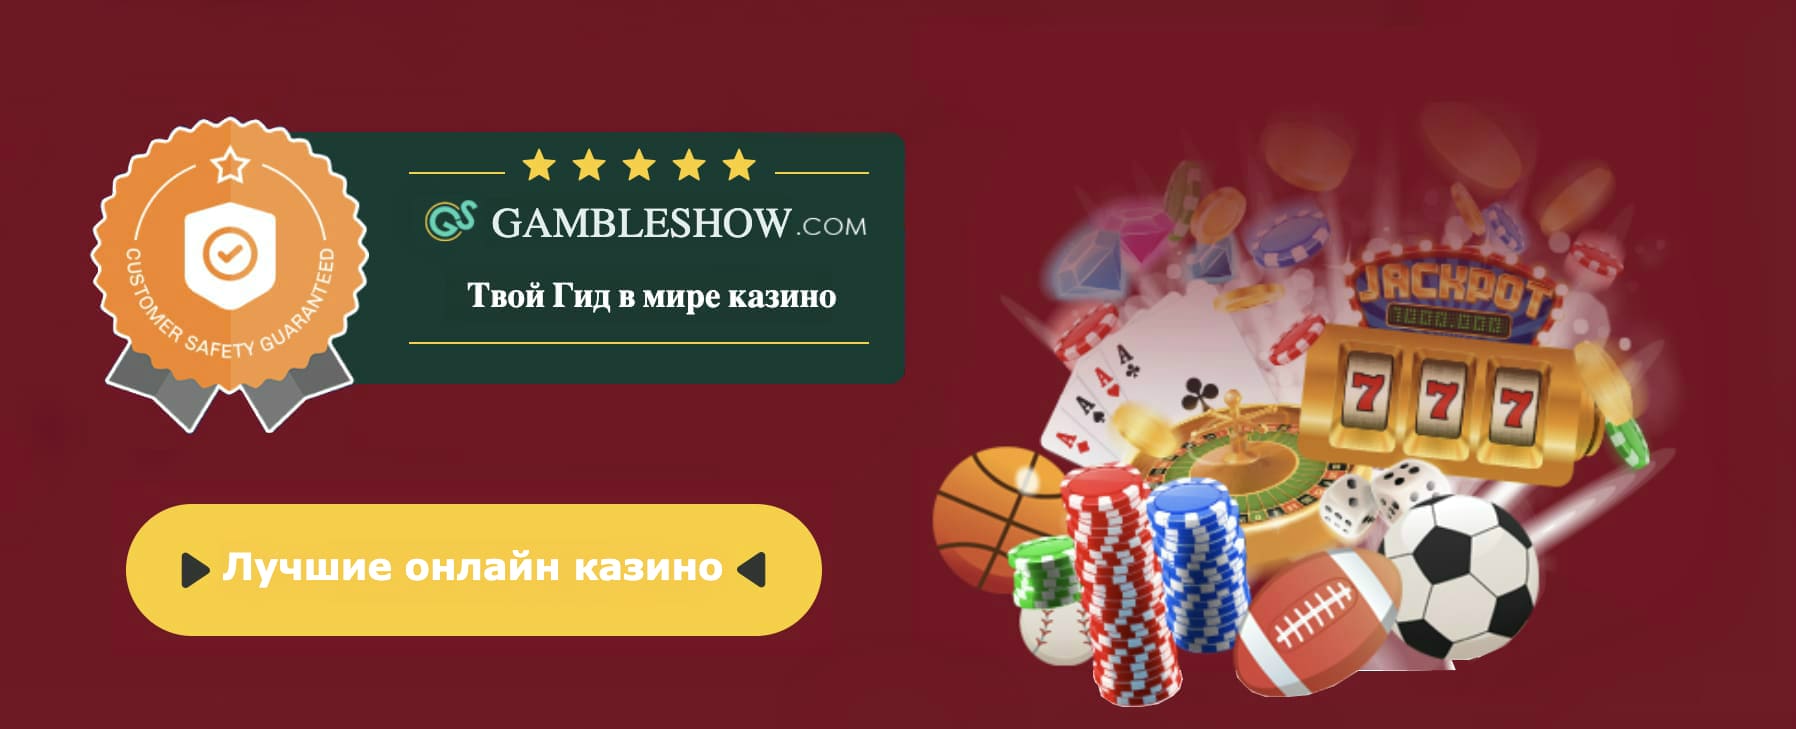 Juegos de casino gratis tragamonedas viejas gratis sin descargar